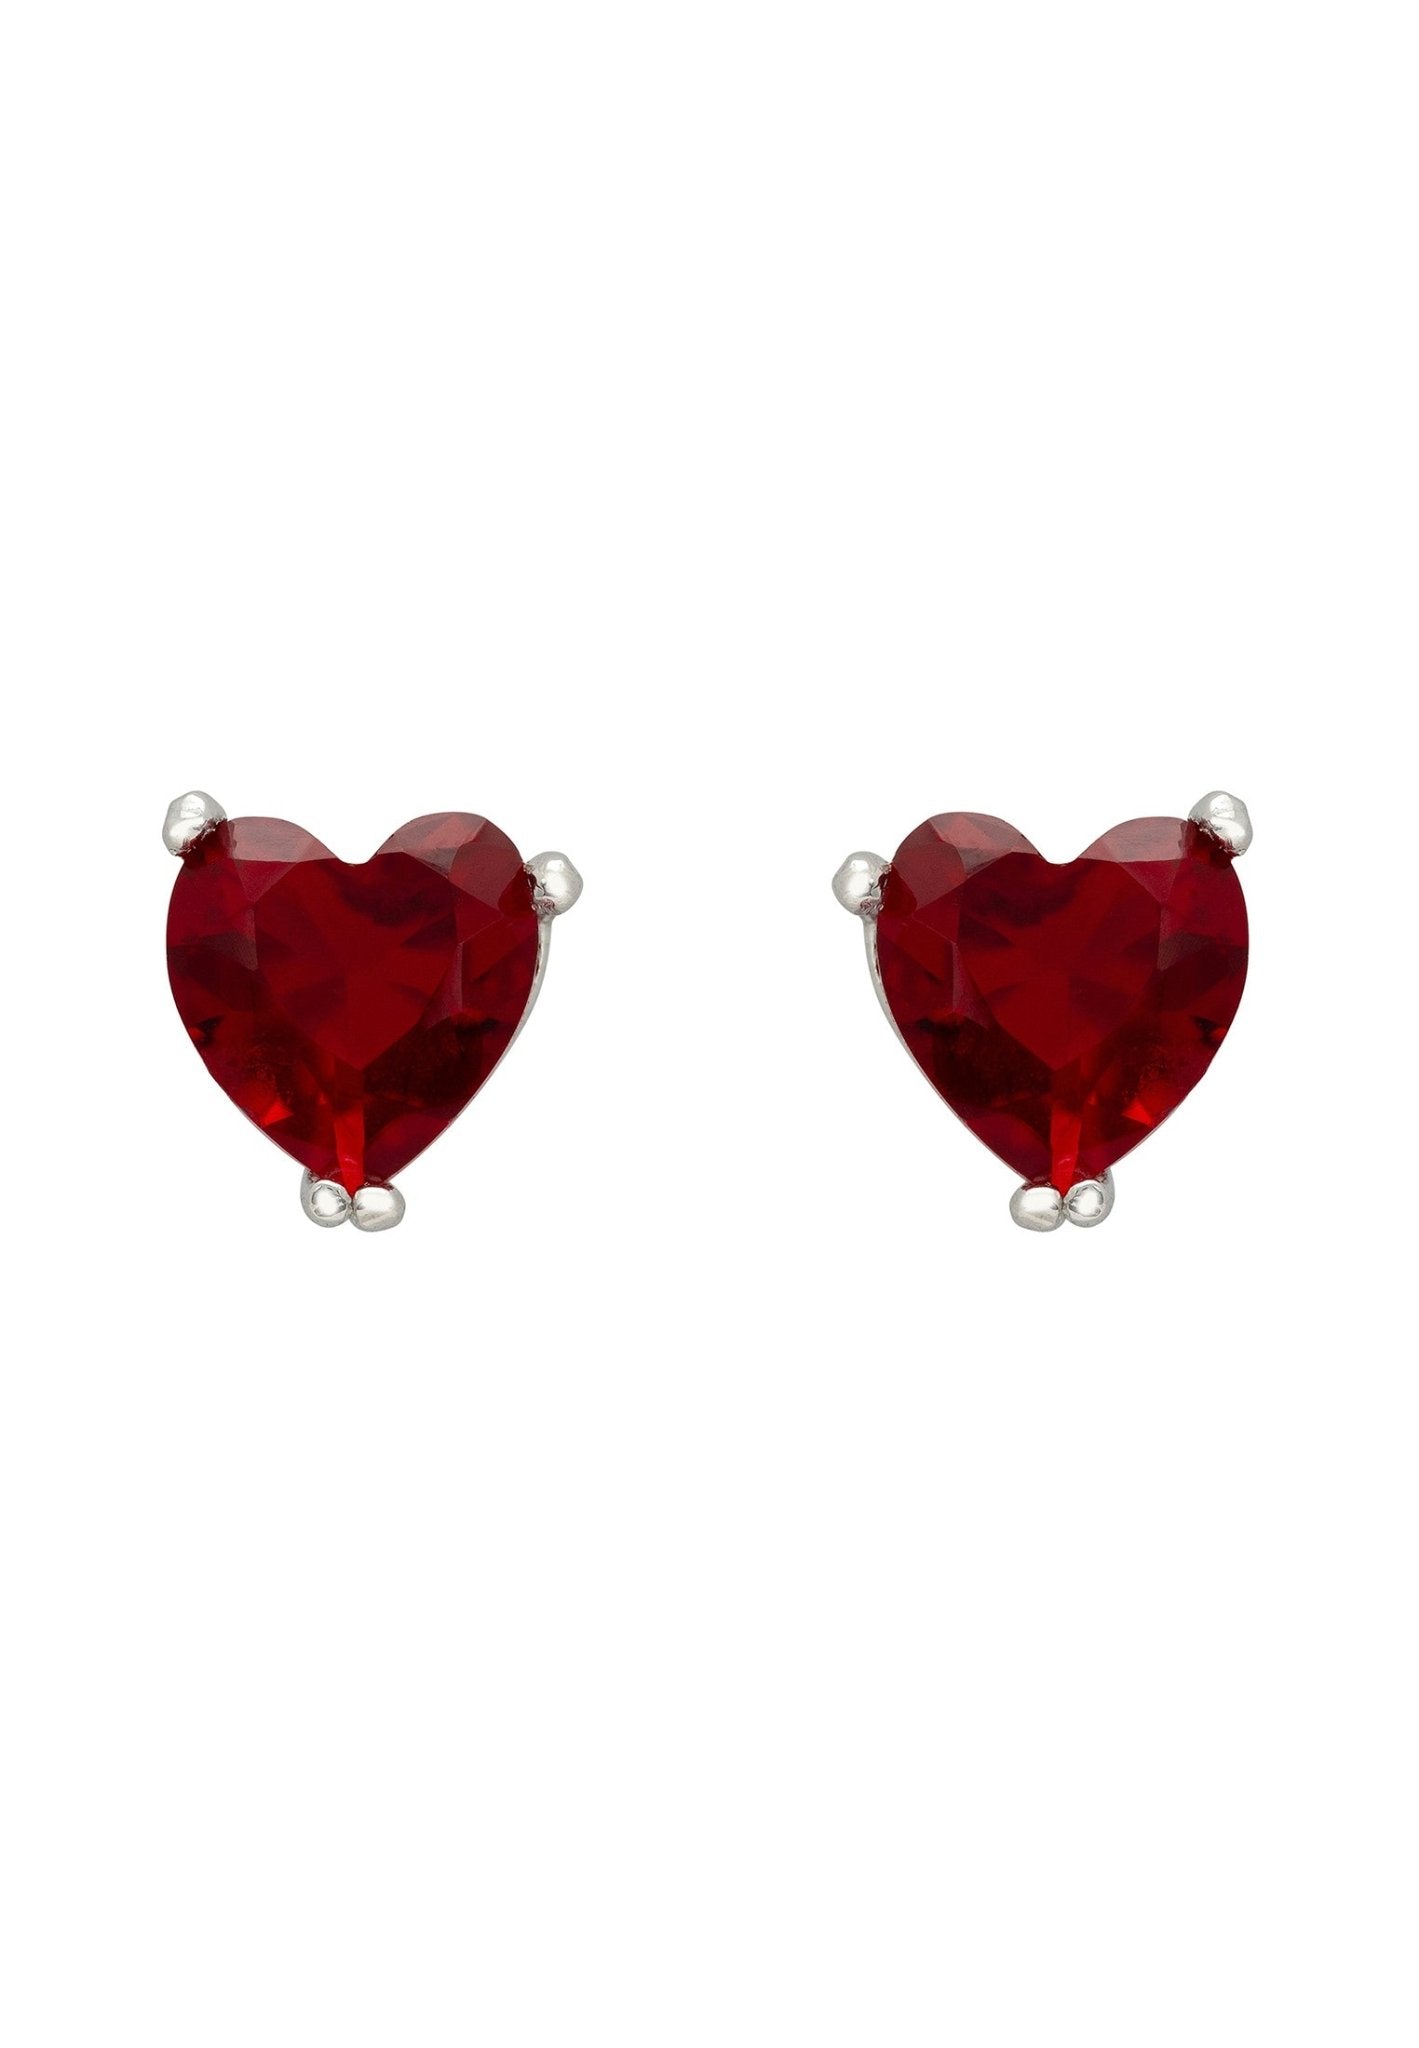 Asscher Cut Heart Stud Earrings Silver Ruby - LATELITA Earrings